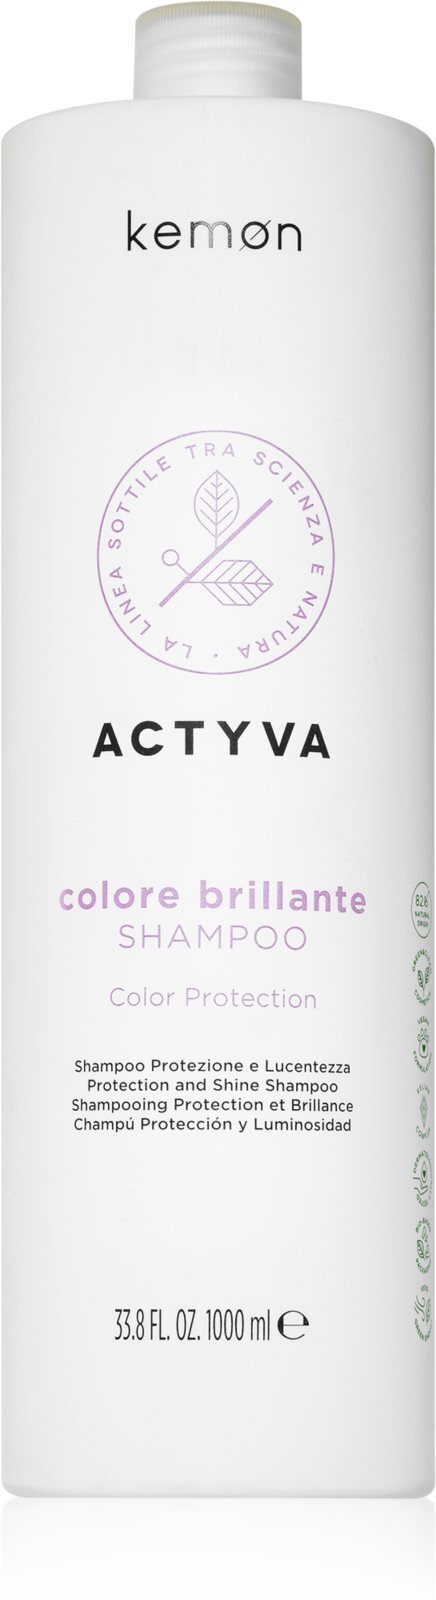 szampon kemon actyva color brillante 1000ml